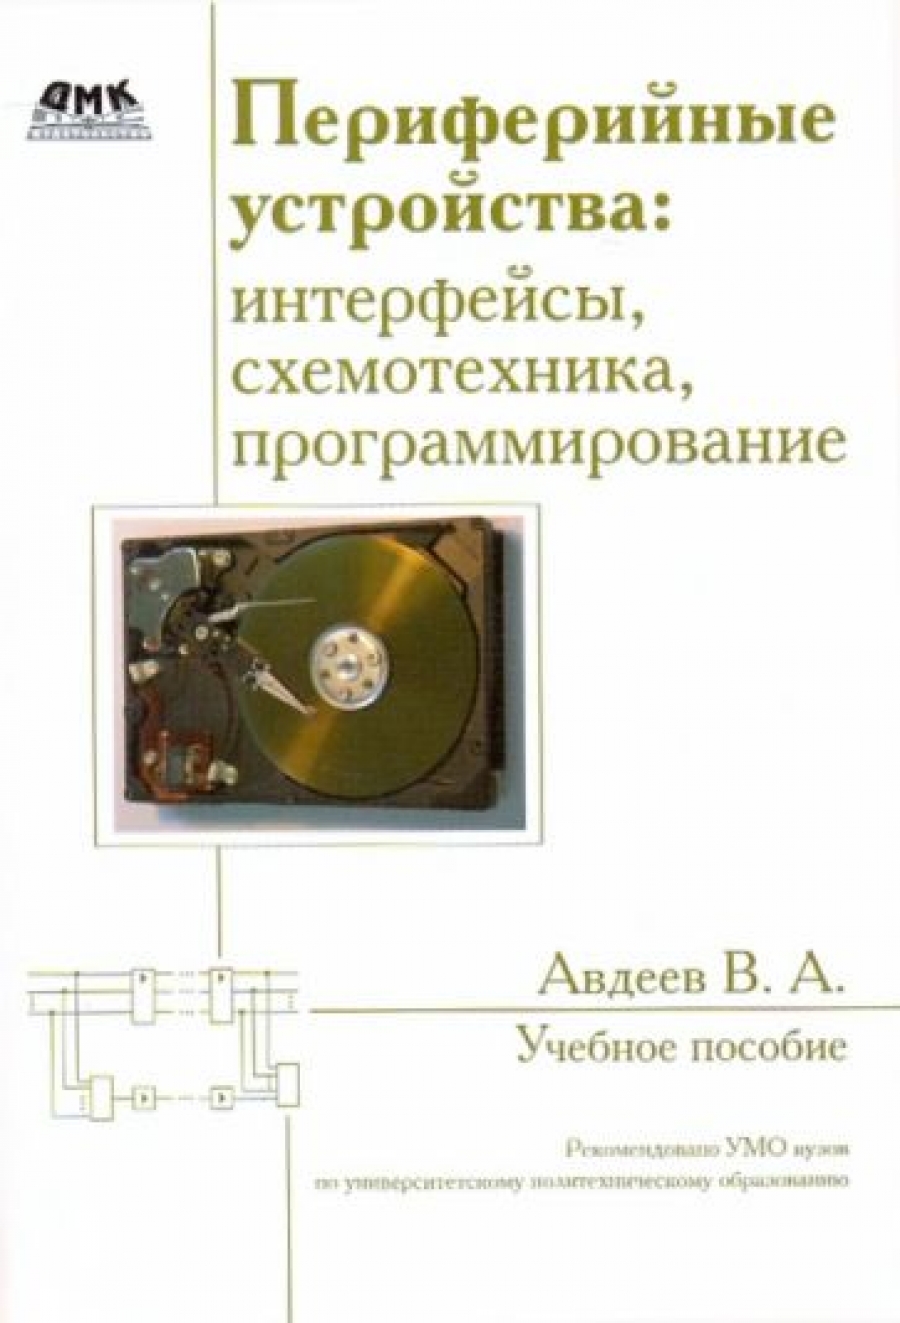 Авдеев В. - Периферийные устройства: интерфейсы, схемотехника, программирование 